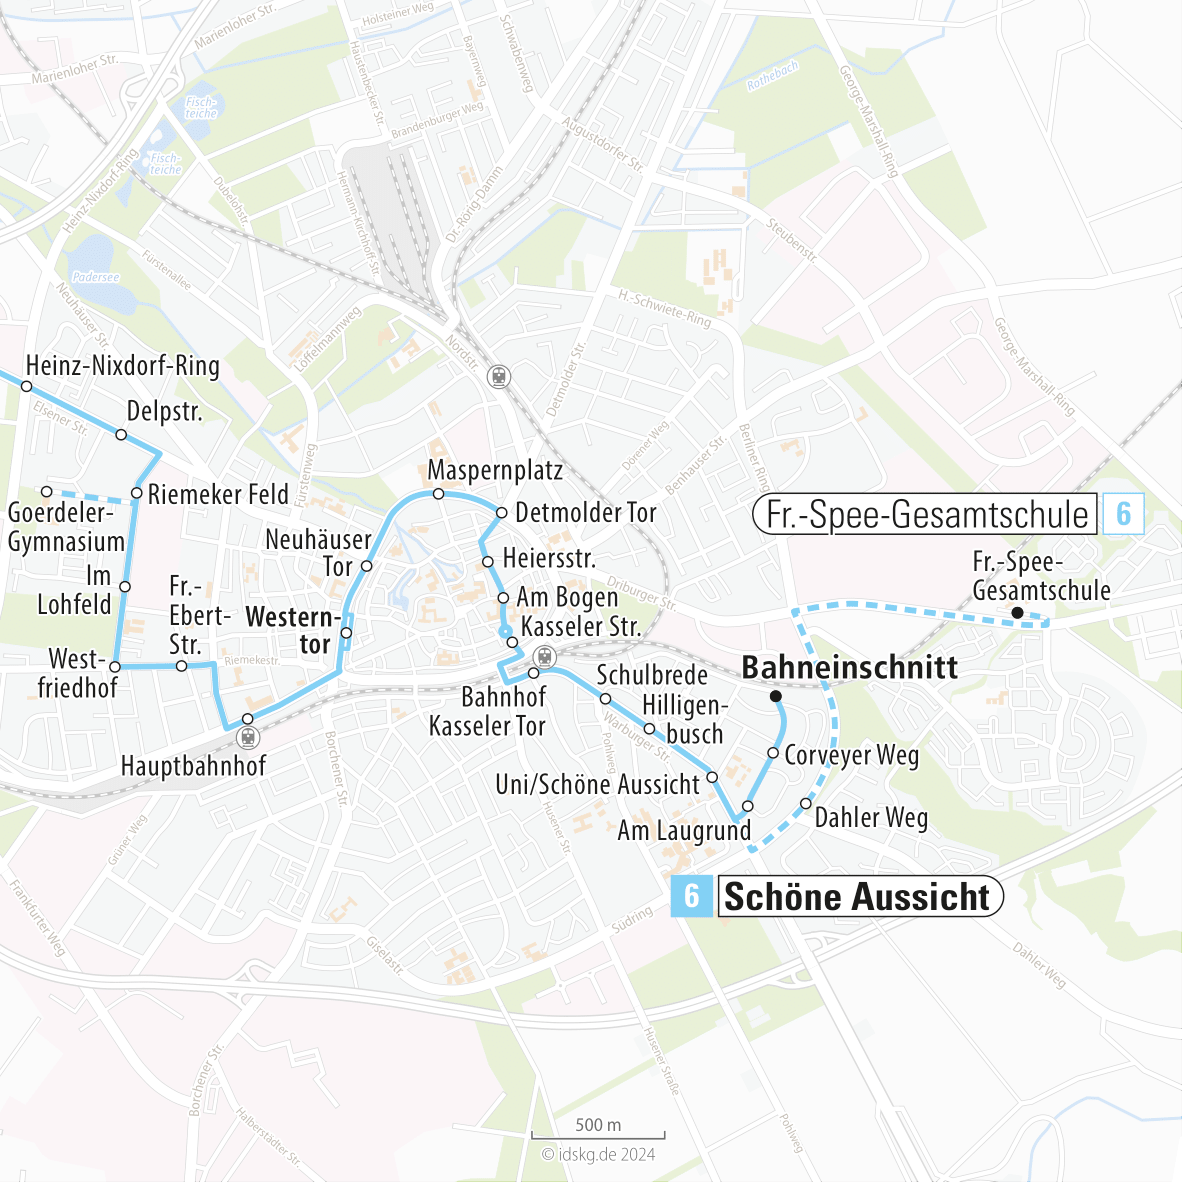 Kartenausschnitt der Linie 6 Hauptbahnhof bis Schöne Aussicht 15x15